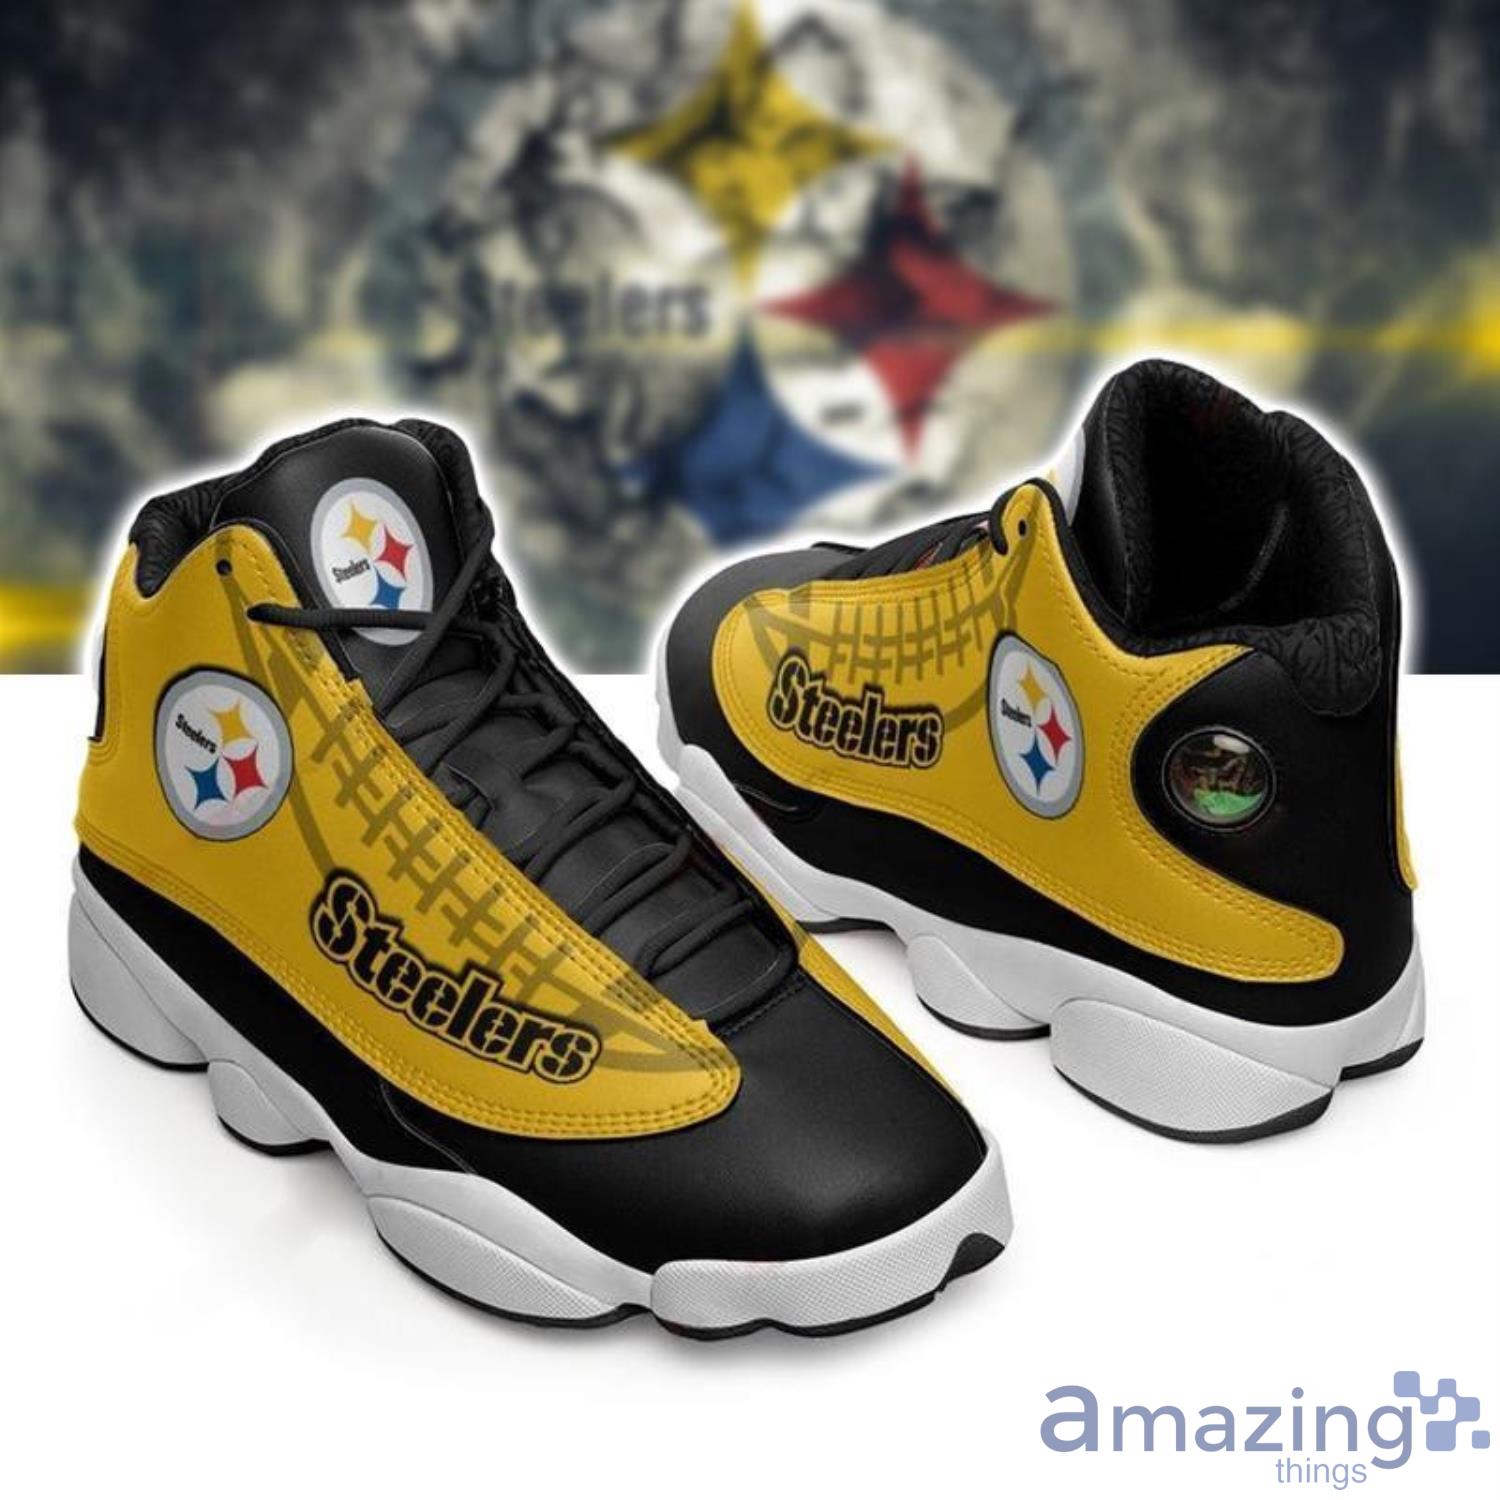 Pittsburgh Steelers Form Air Jordan 13 Sneakers Football Sneakers